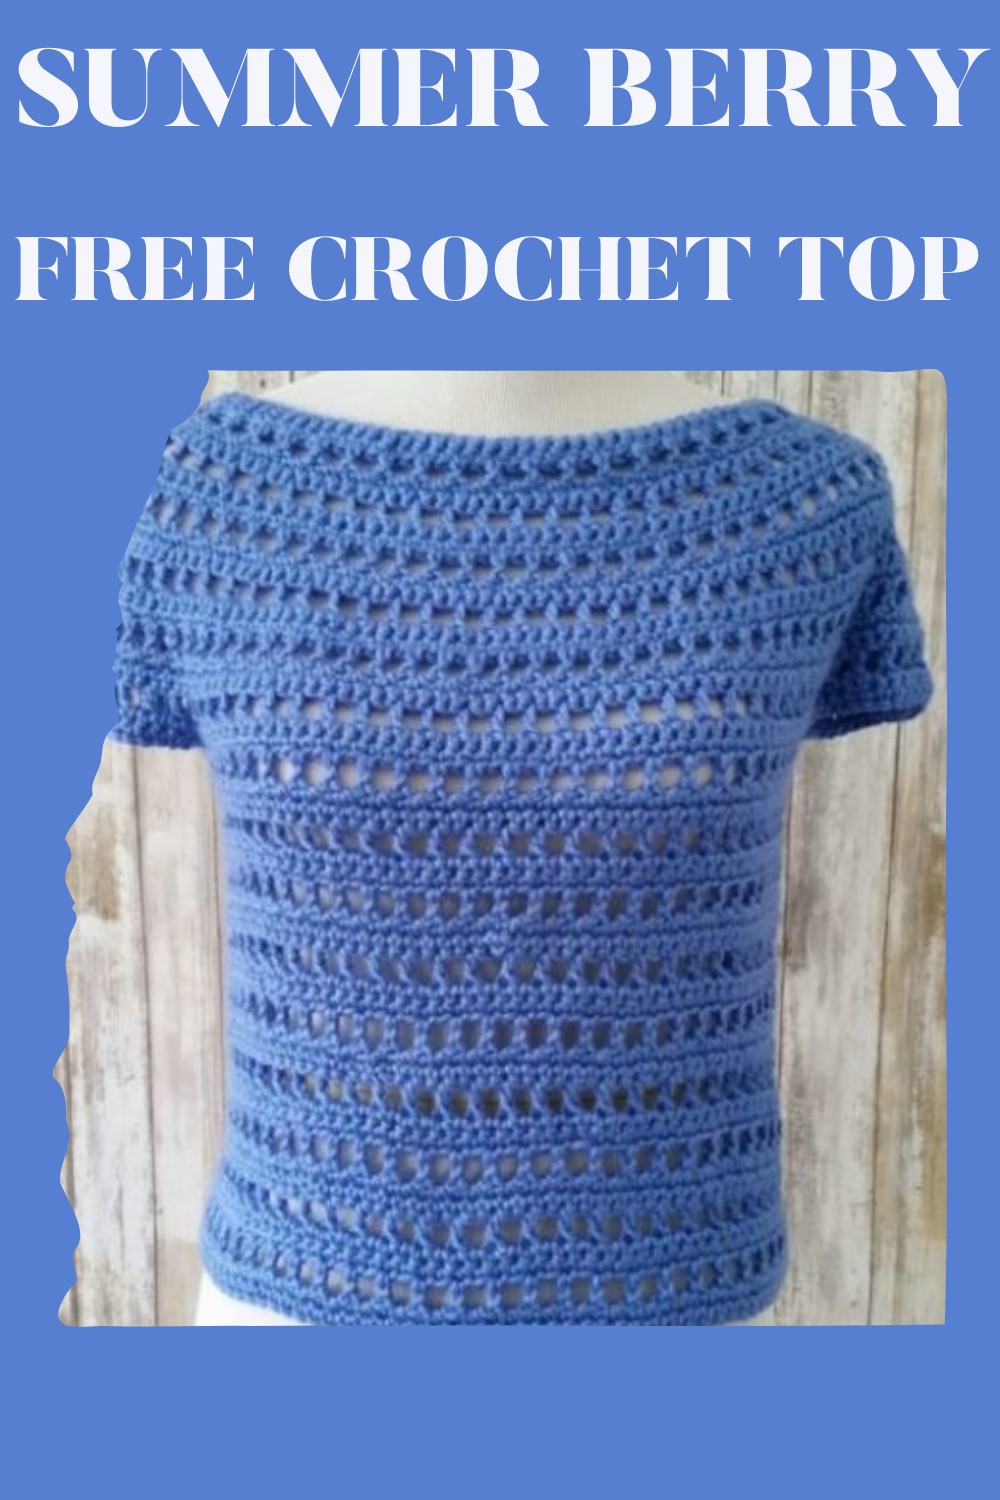 Summer Berry Free Crochet Top